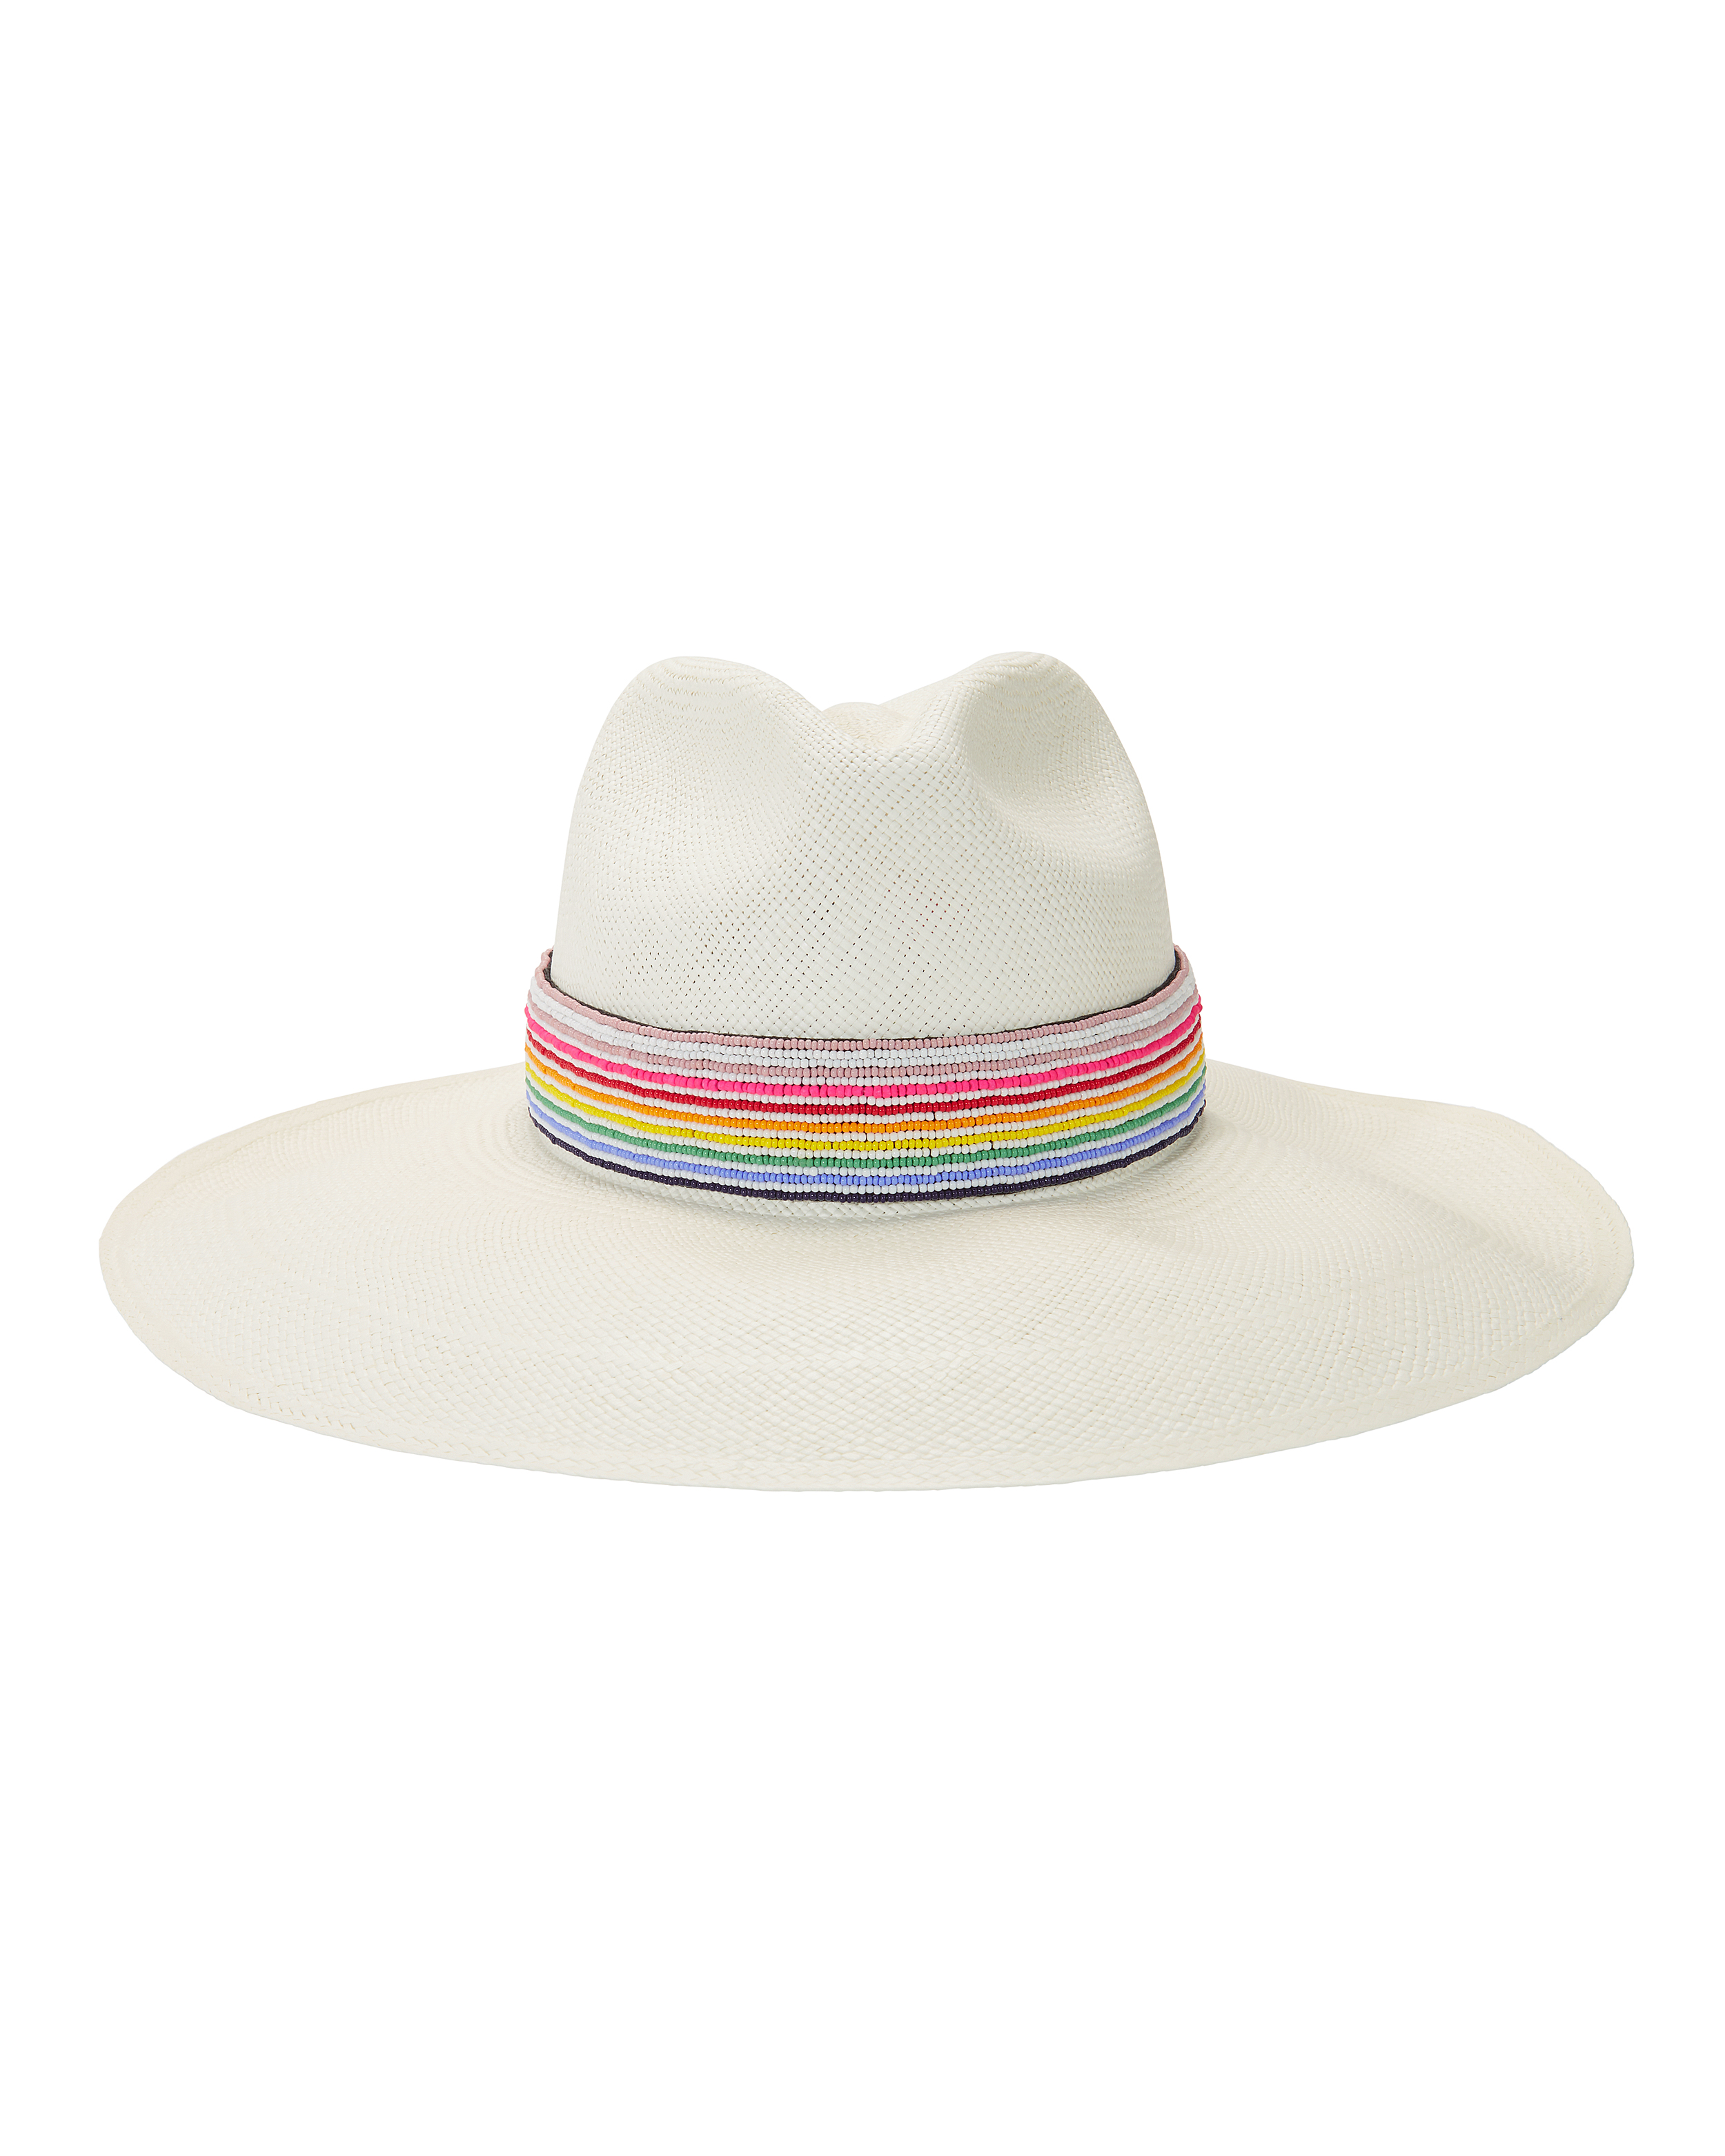 The Waikiki Hat